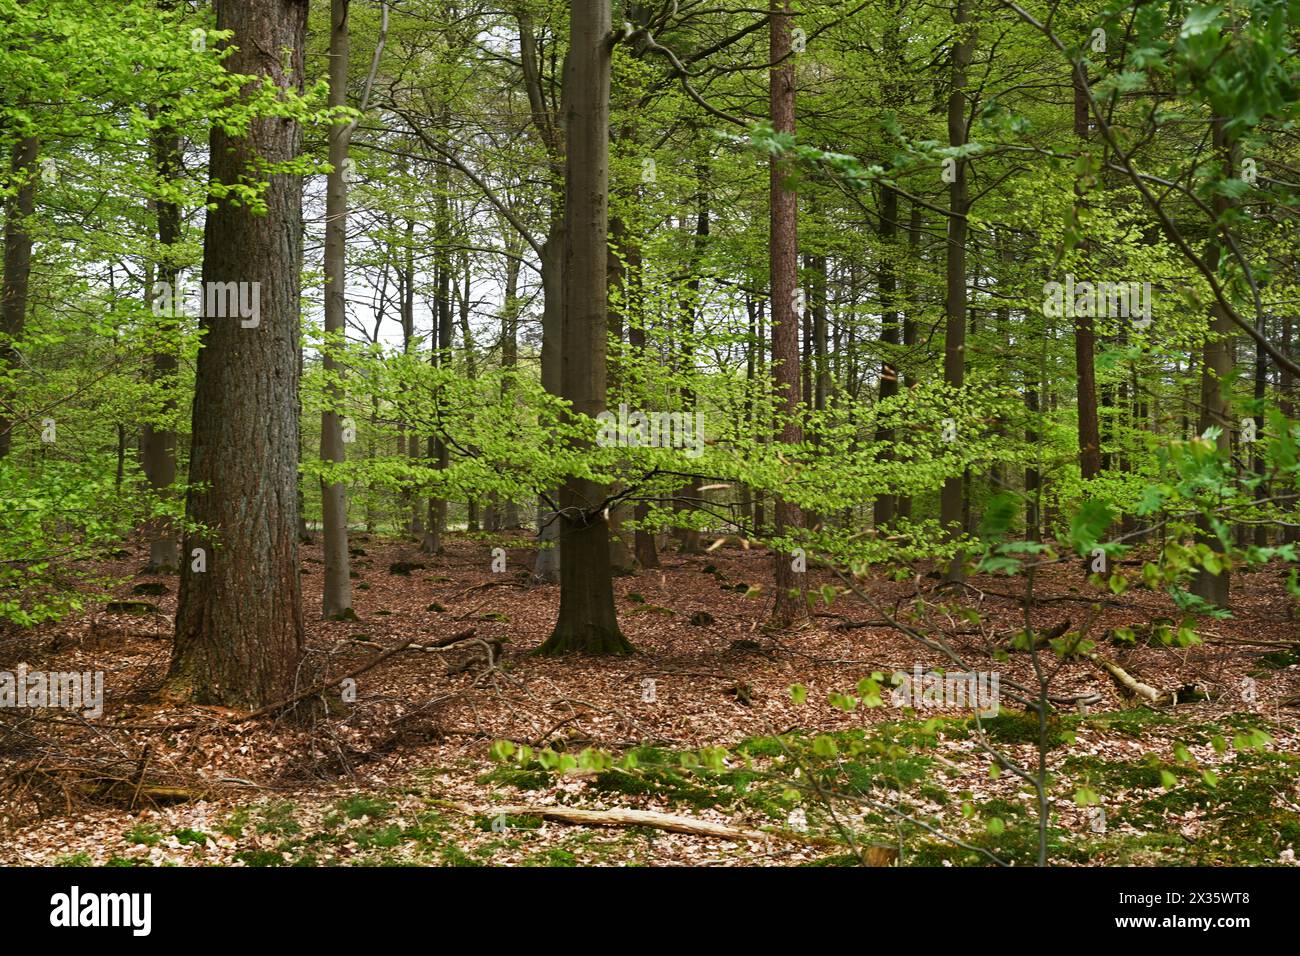 NL, Eesergroen : le printemps caractérise le paysage, les villes et les habitants de la province de Drenthe aux pays-Bas. Mai vert en avril, forêt à Dren Banque D'Images